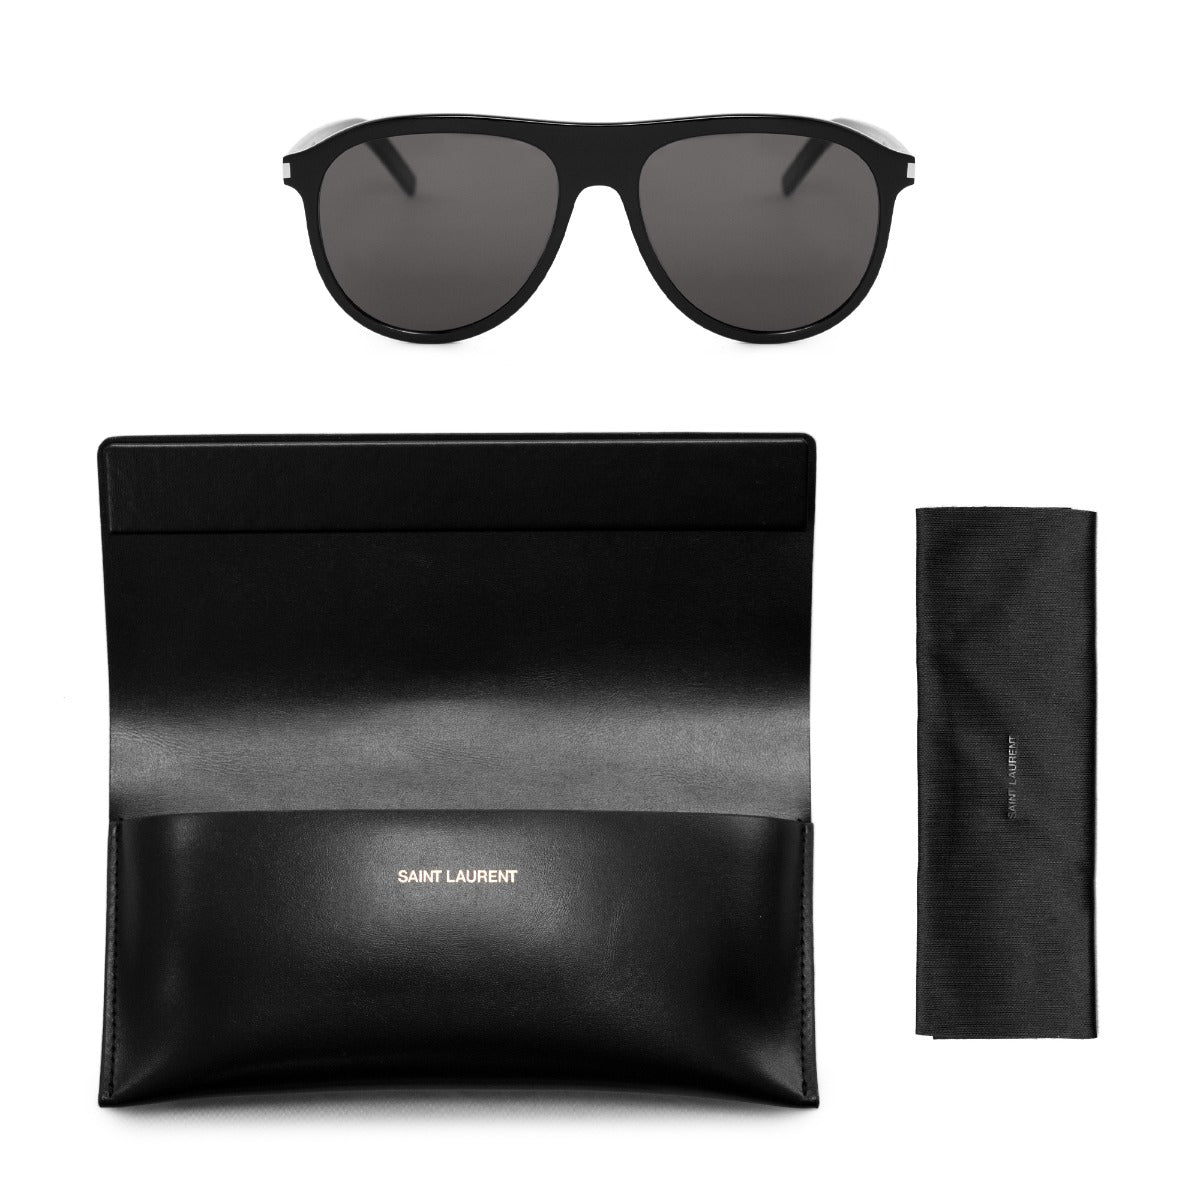 title:Saint Laurent Pilot Sunglasses SL432 001 57;color:Black